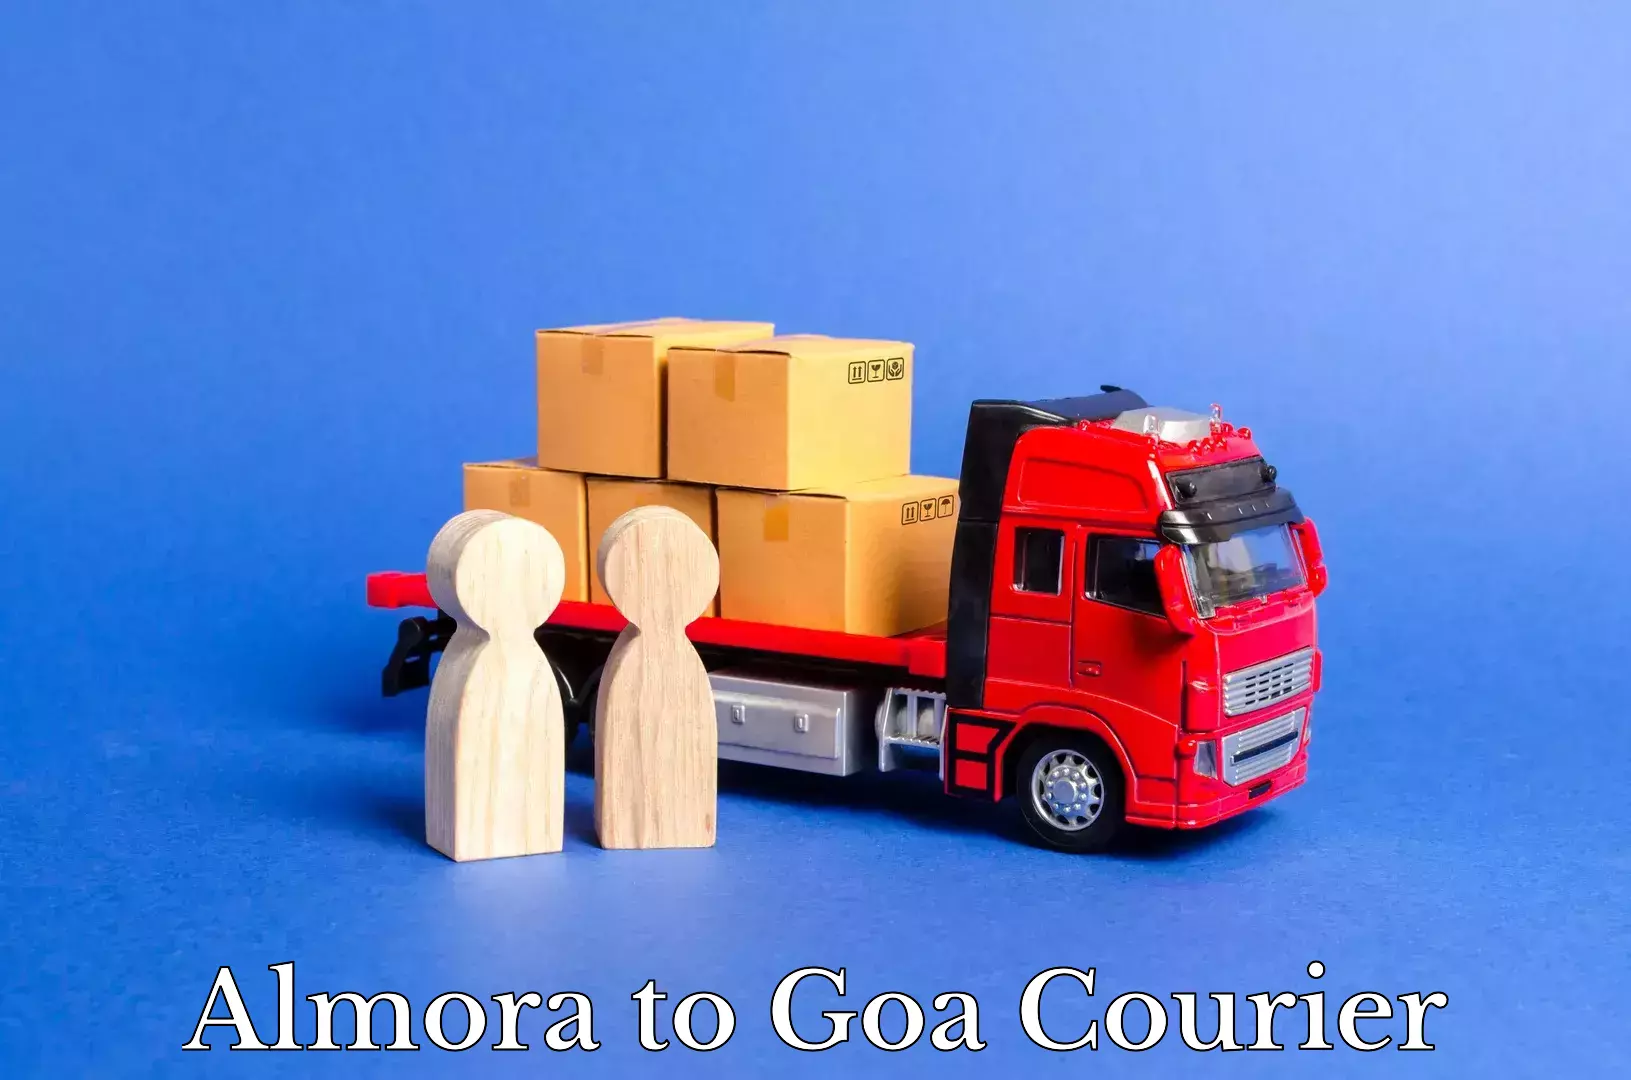 Urban courier service Almora to Goa